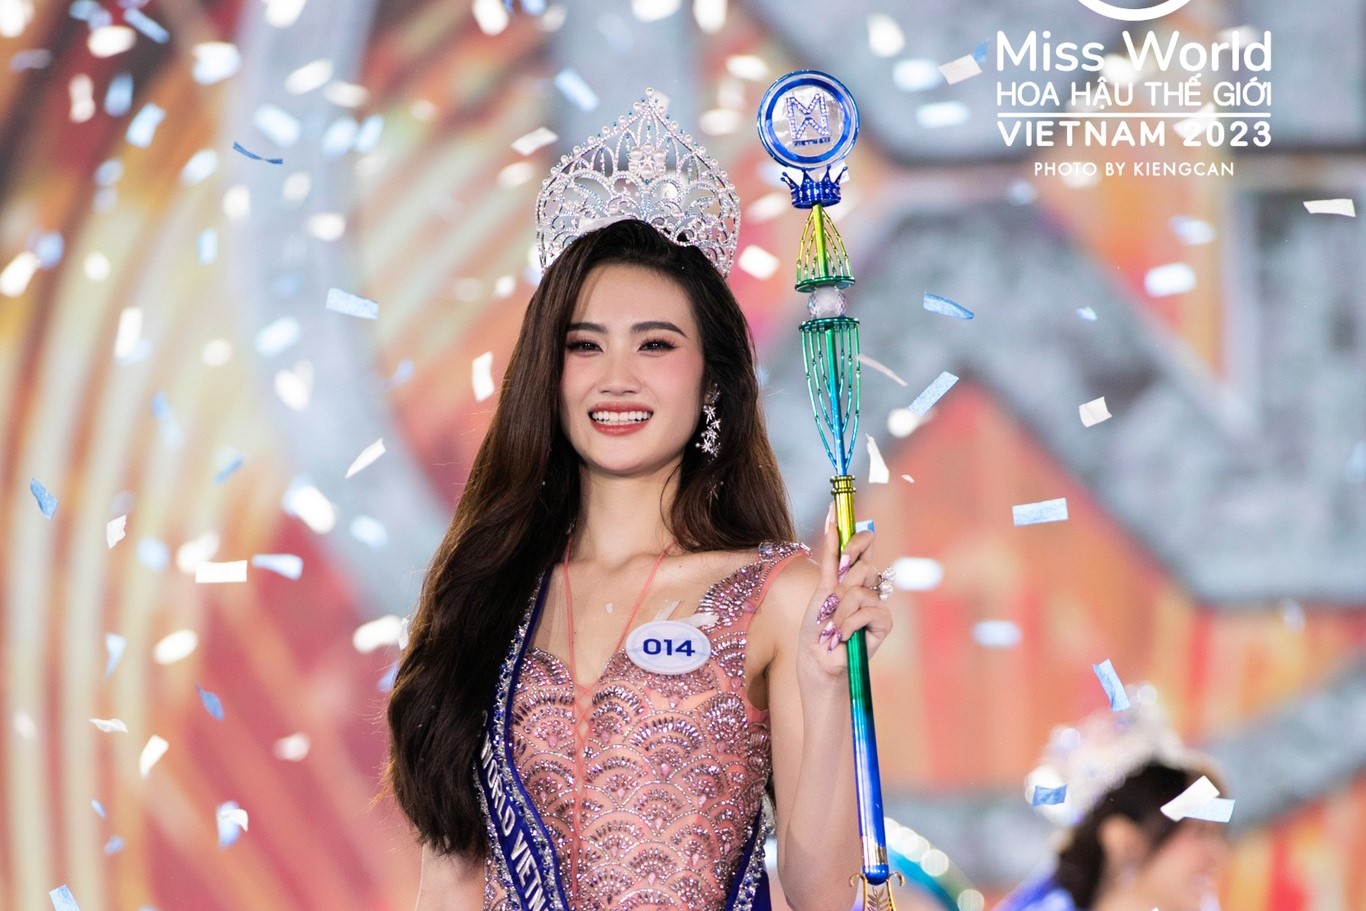 Người đẹp đến từ Bình Định đăng quang Miss World Vietnam 2023